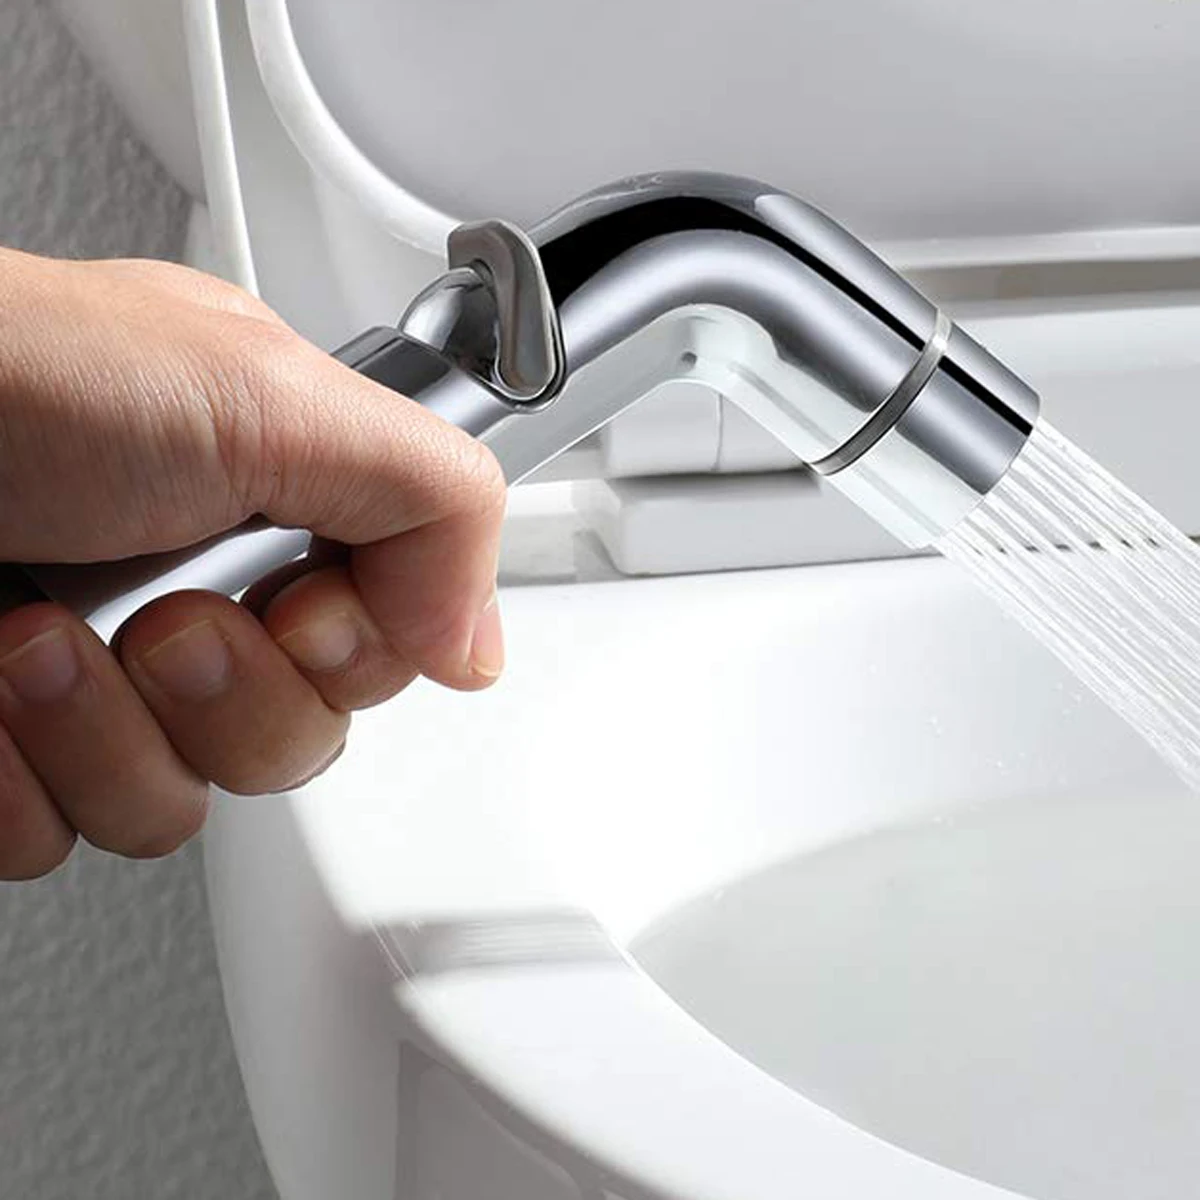 Adjustable Flow Rate Shattaf Hand Toilet Bidet Sprayer Buy Portable Bidet Faucet Adjustable Flow Shattaf Adjust Water Pressure Shower Product On Alibaba Com